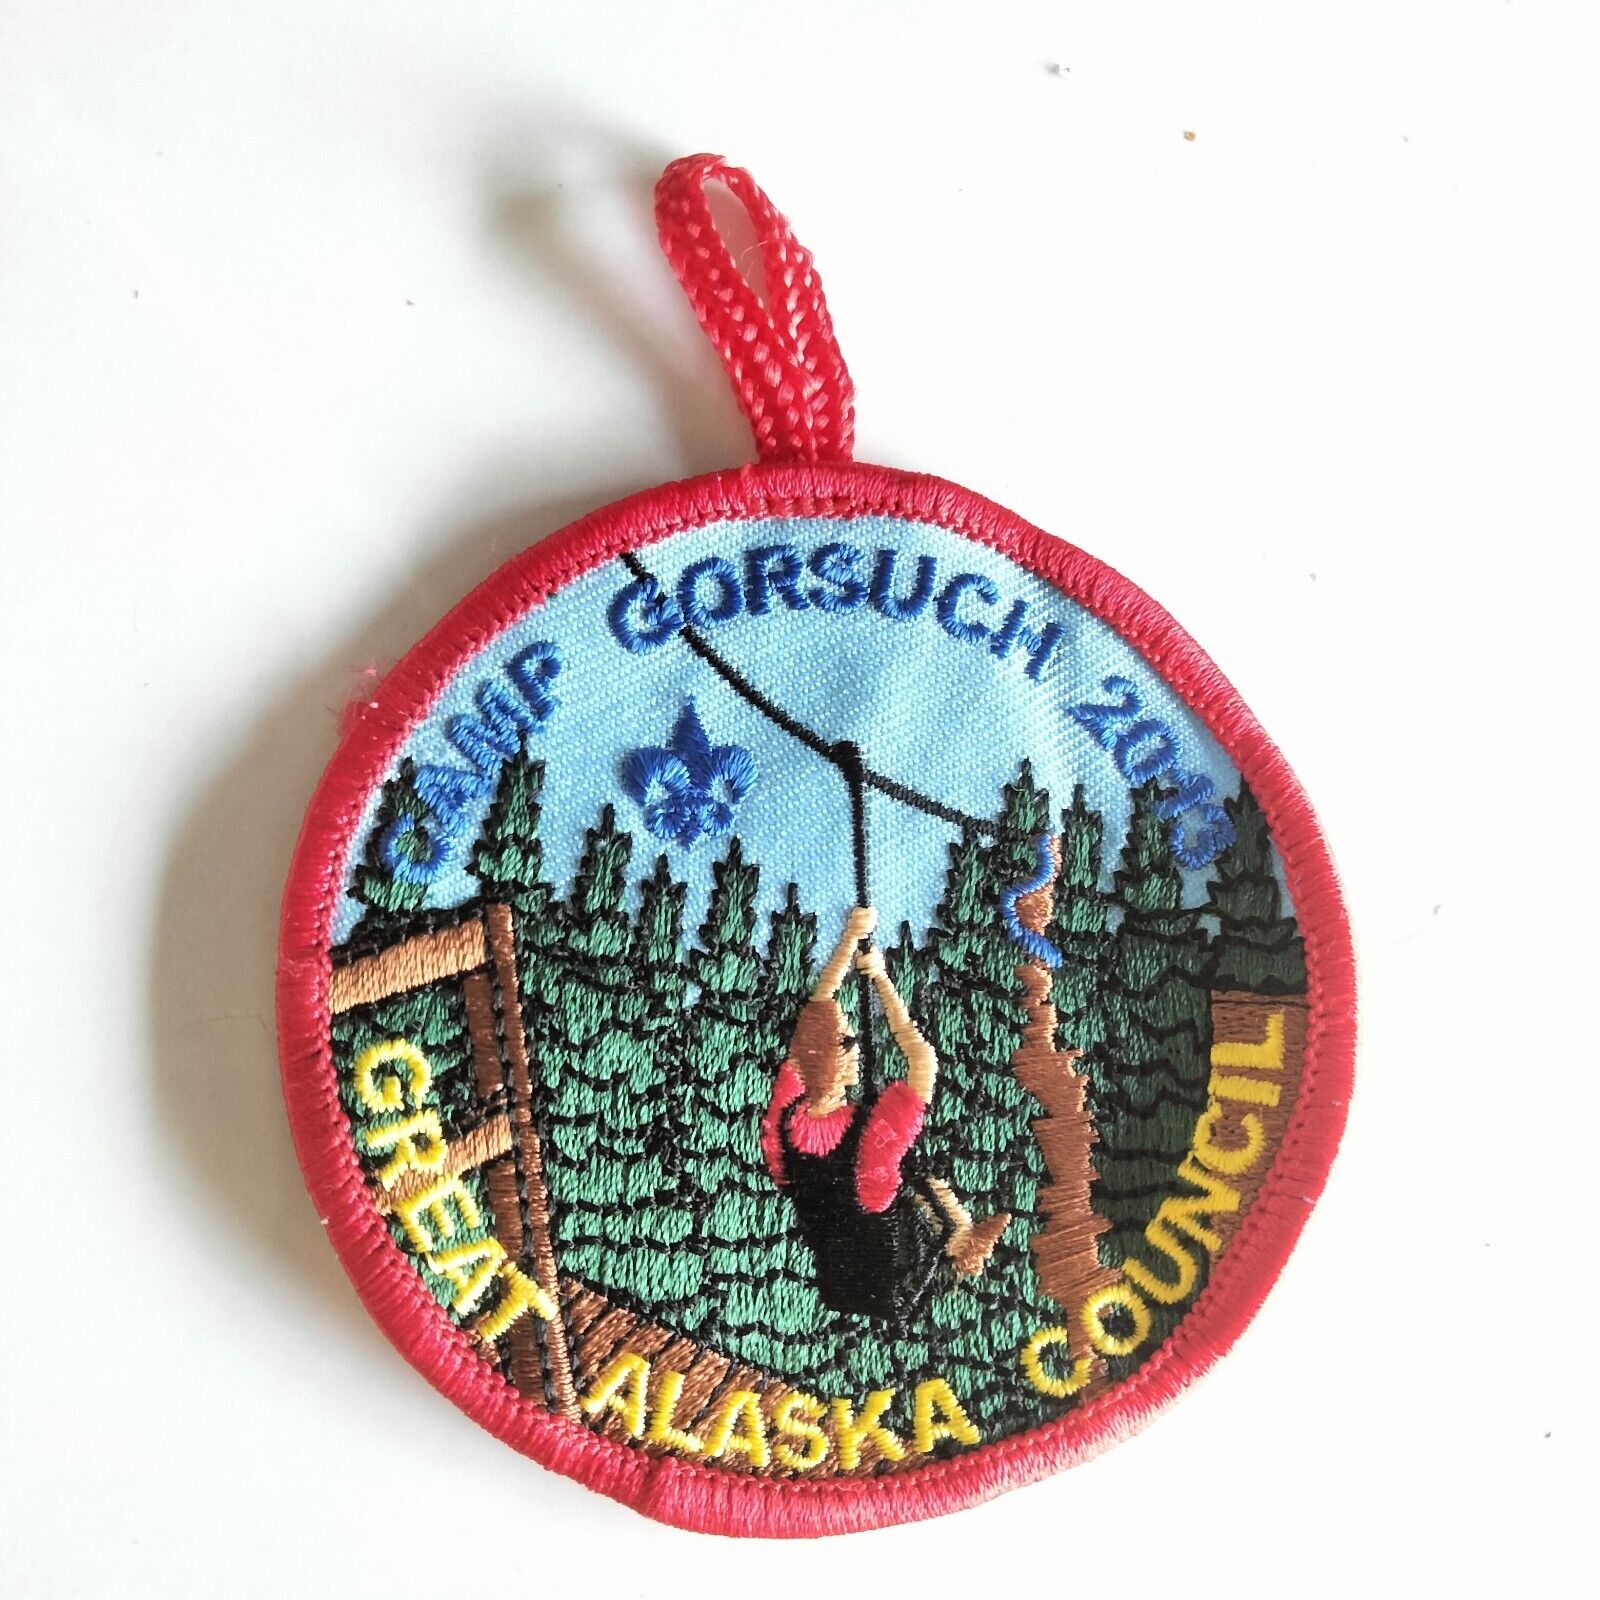 BSA High Adventure , Camp Gorsuch 2013 , Great Alaska Council Patch